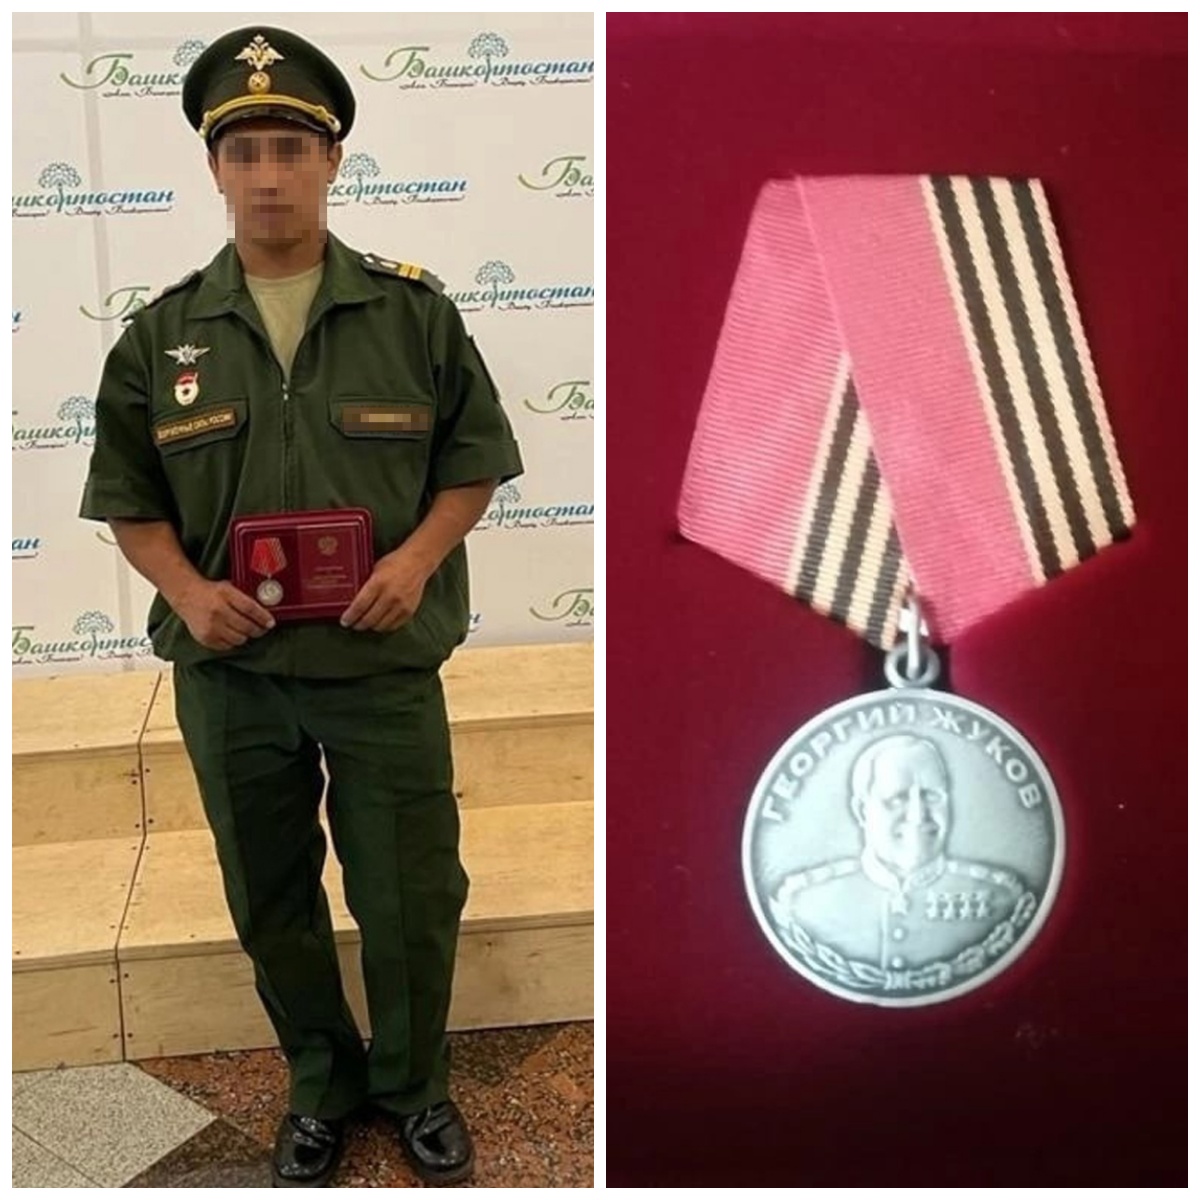 Участник СВО из Салаватского района Башкирии награжден медалью Жукова